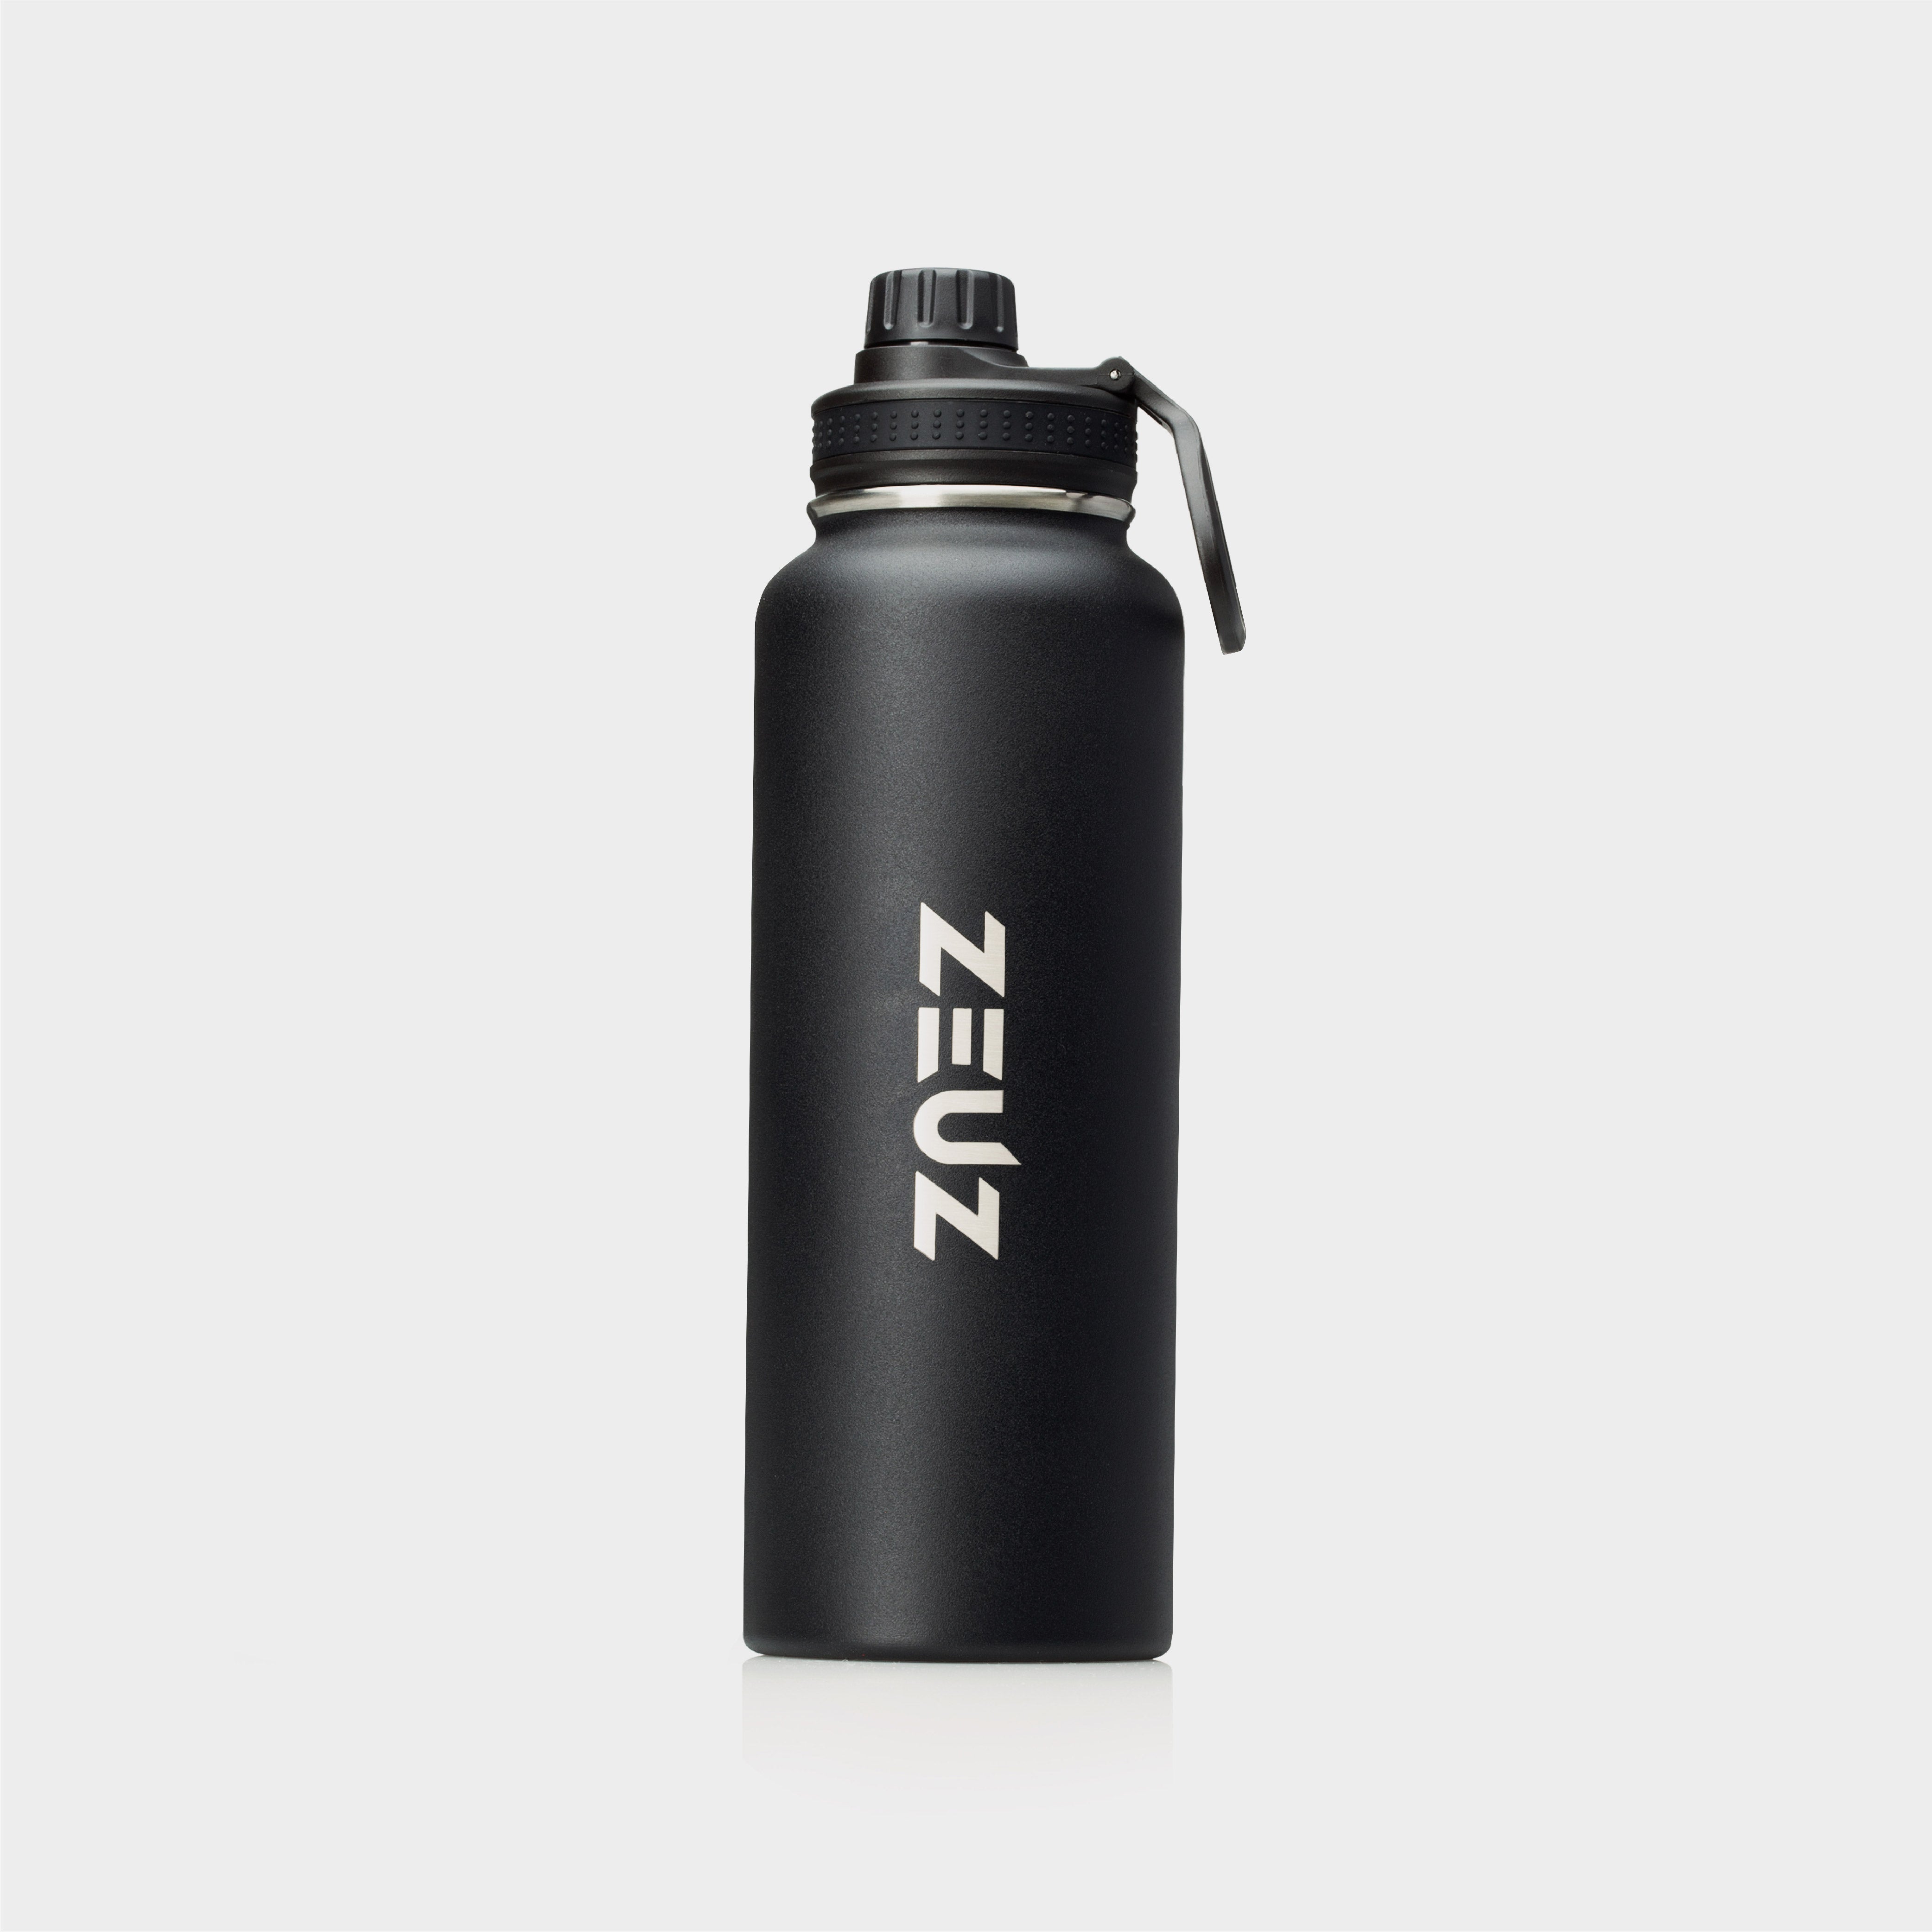 ZEUZ Premium Stainless Steel Thermos Bottle & Drinking Bottle - 1.2 Liters